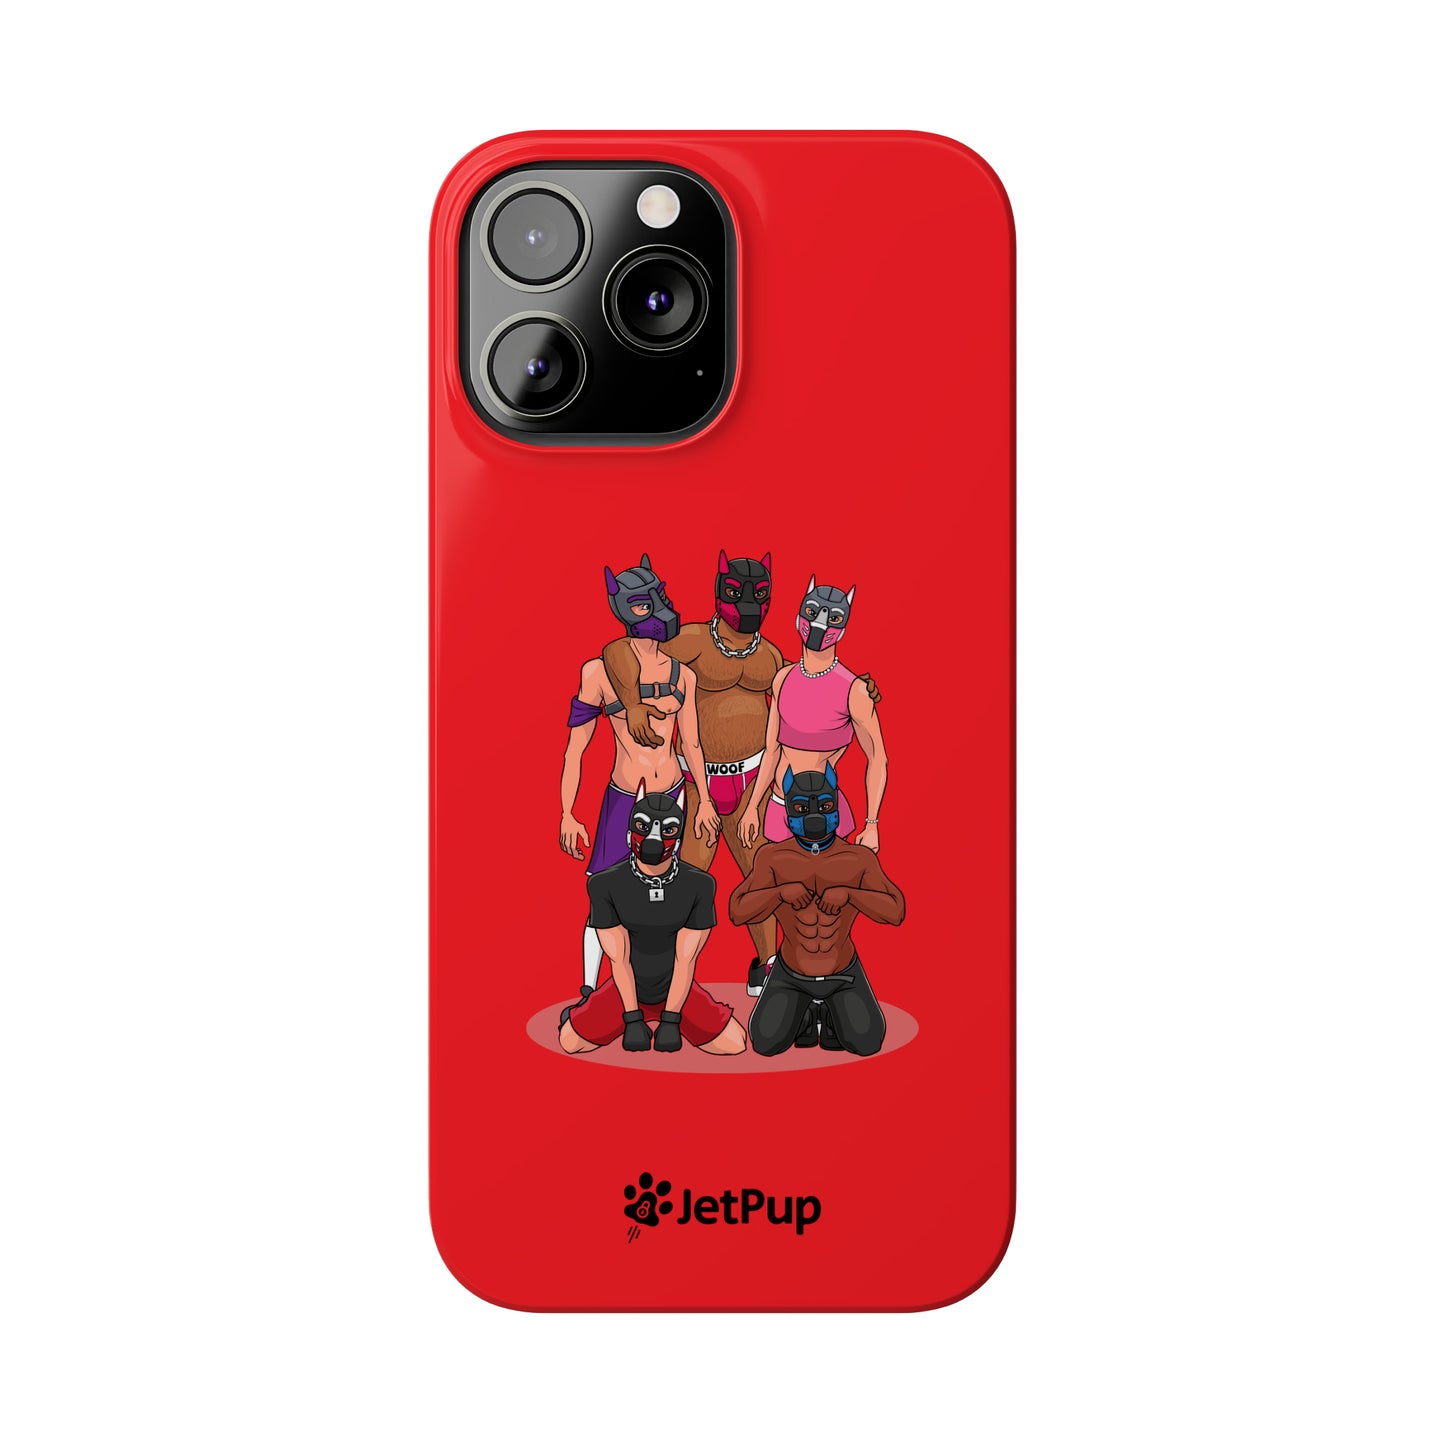 JetPack Slim iPhone Cases - Red